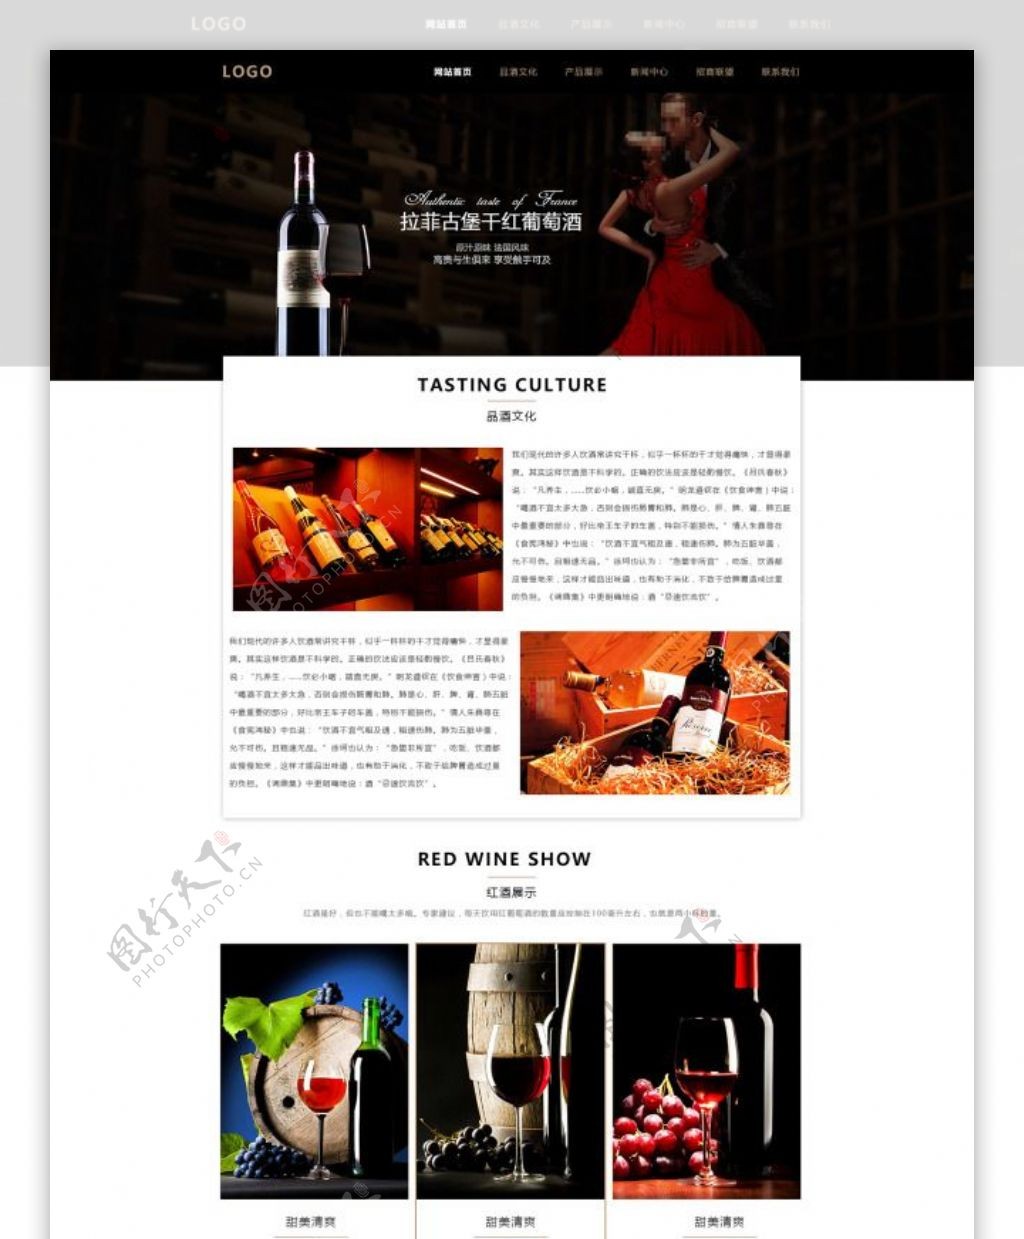 大气的h5企业红酒网站首页设计